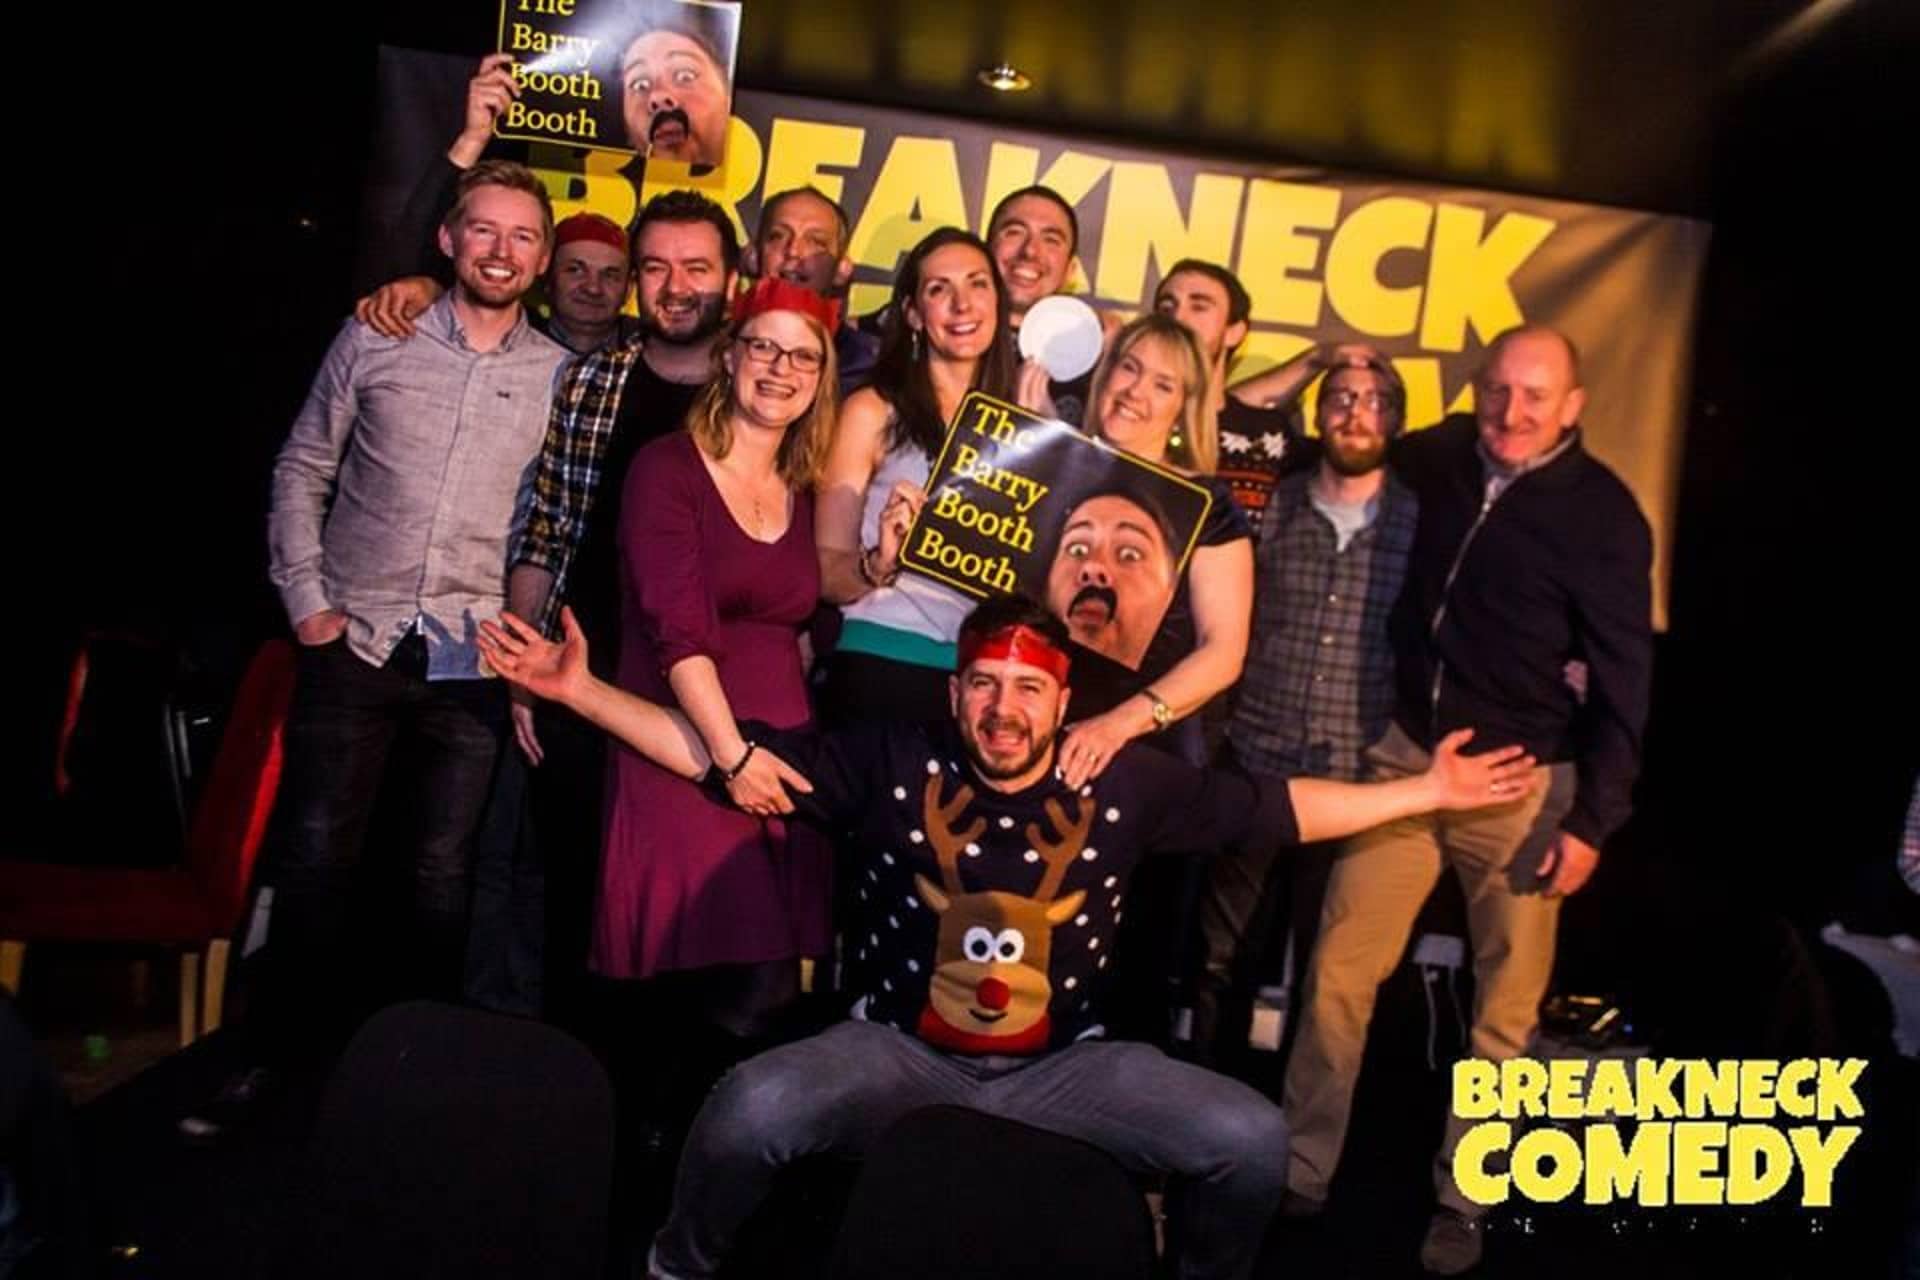 Breakneck Comedy Club in UK